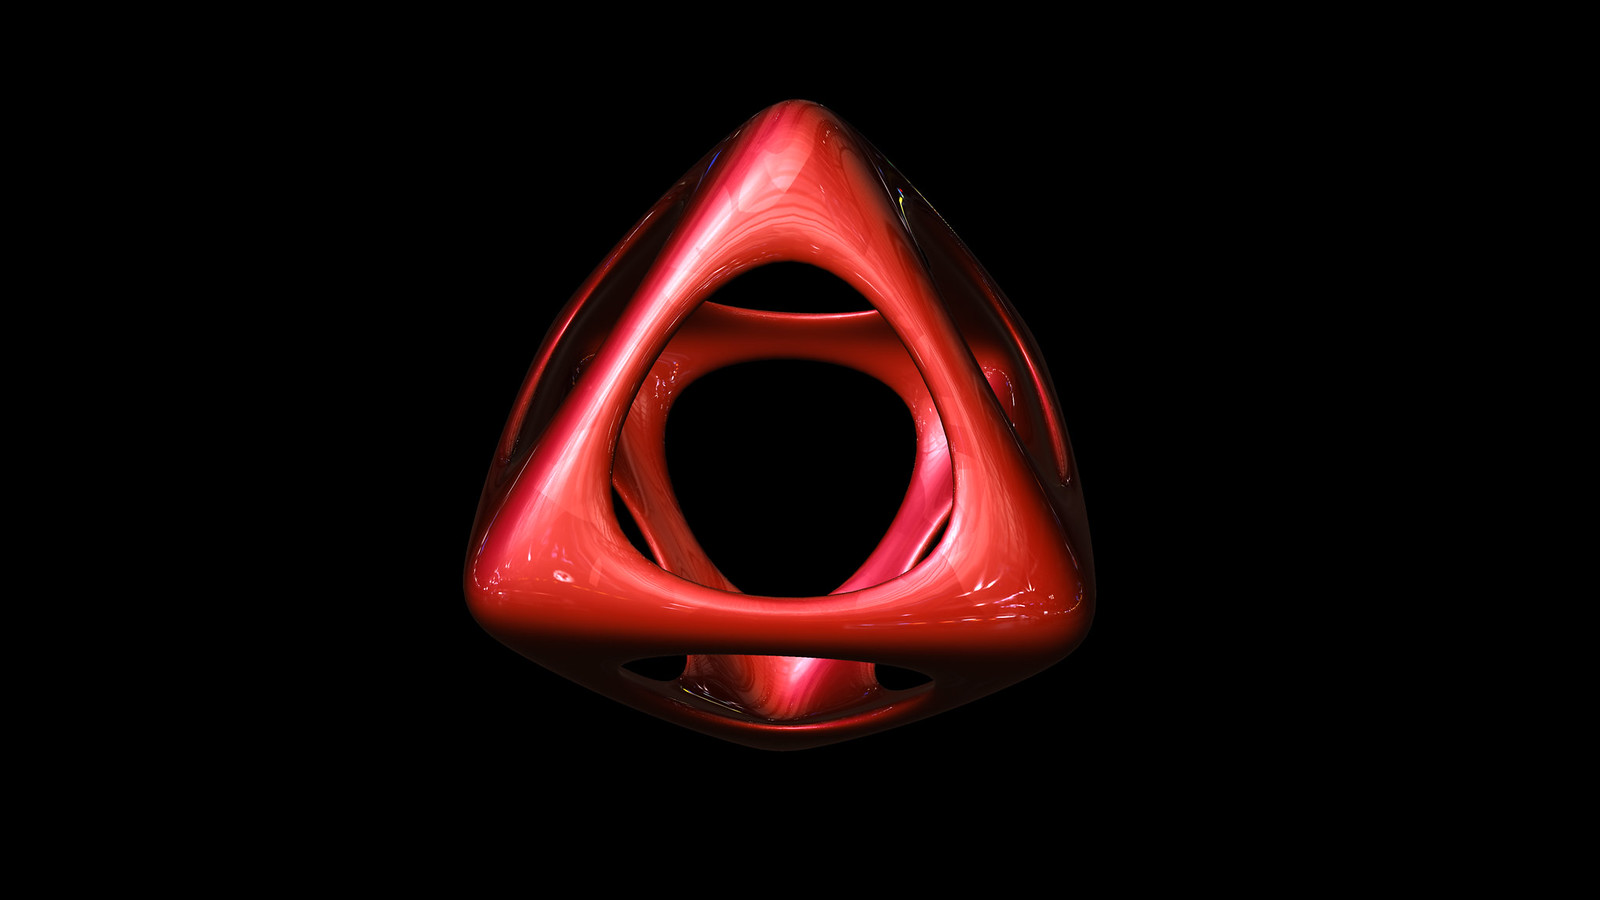 octahedron soft